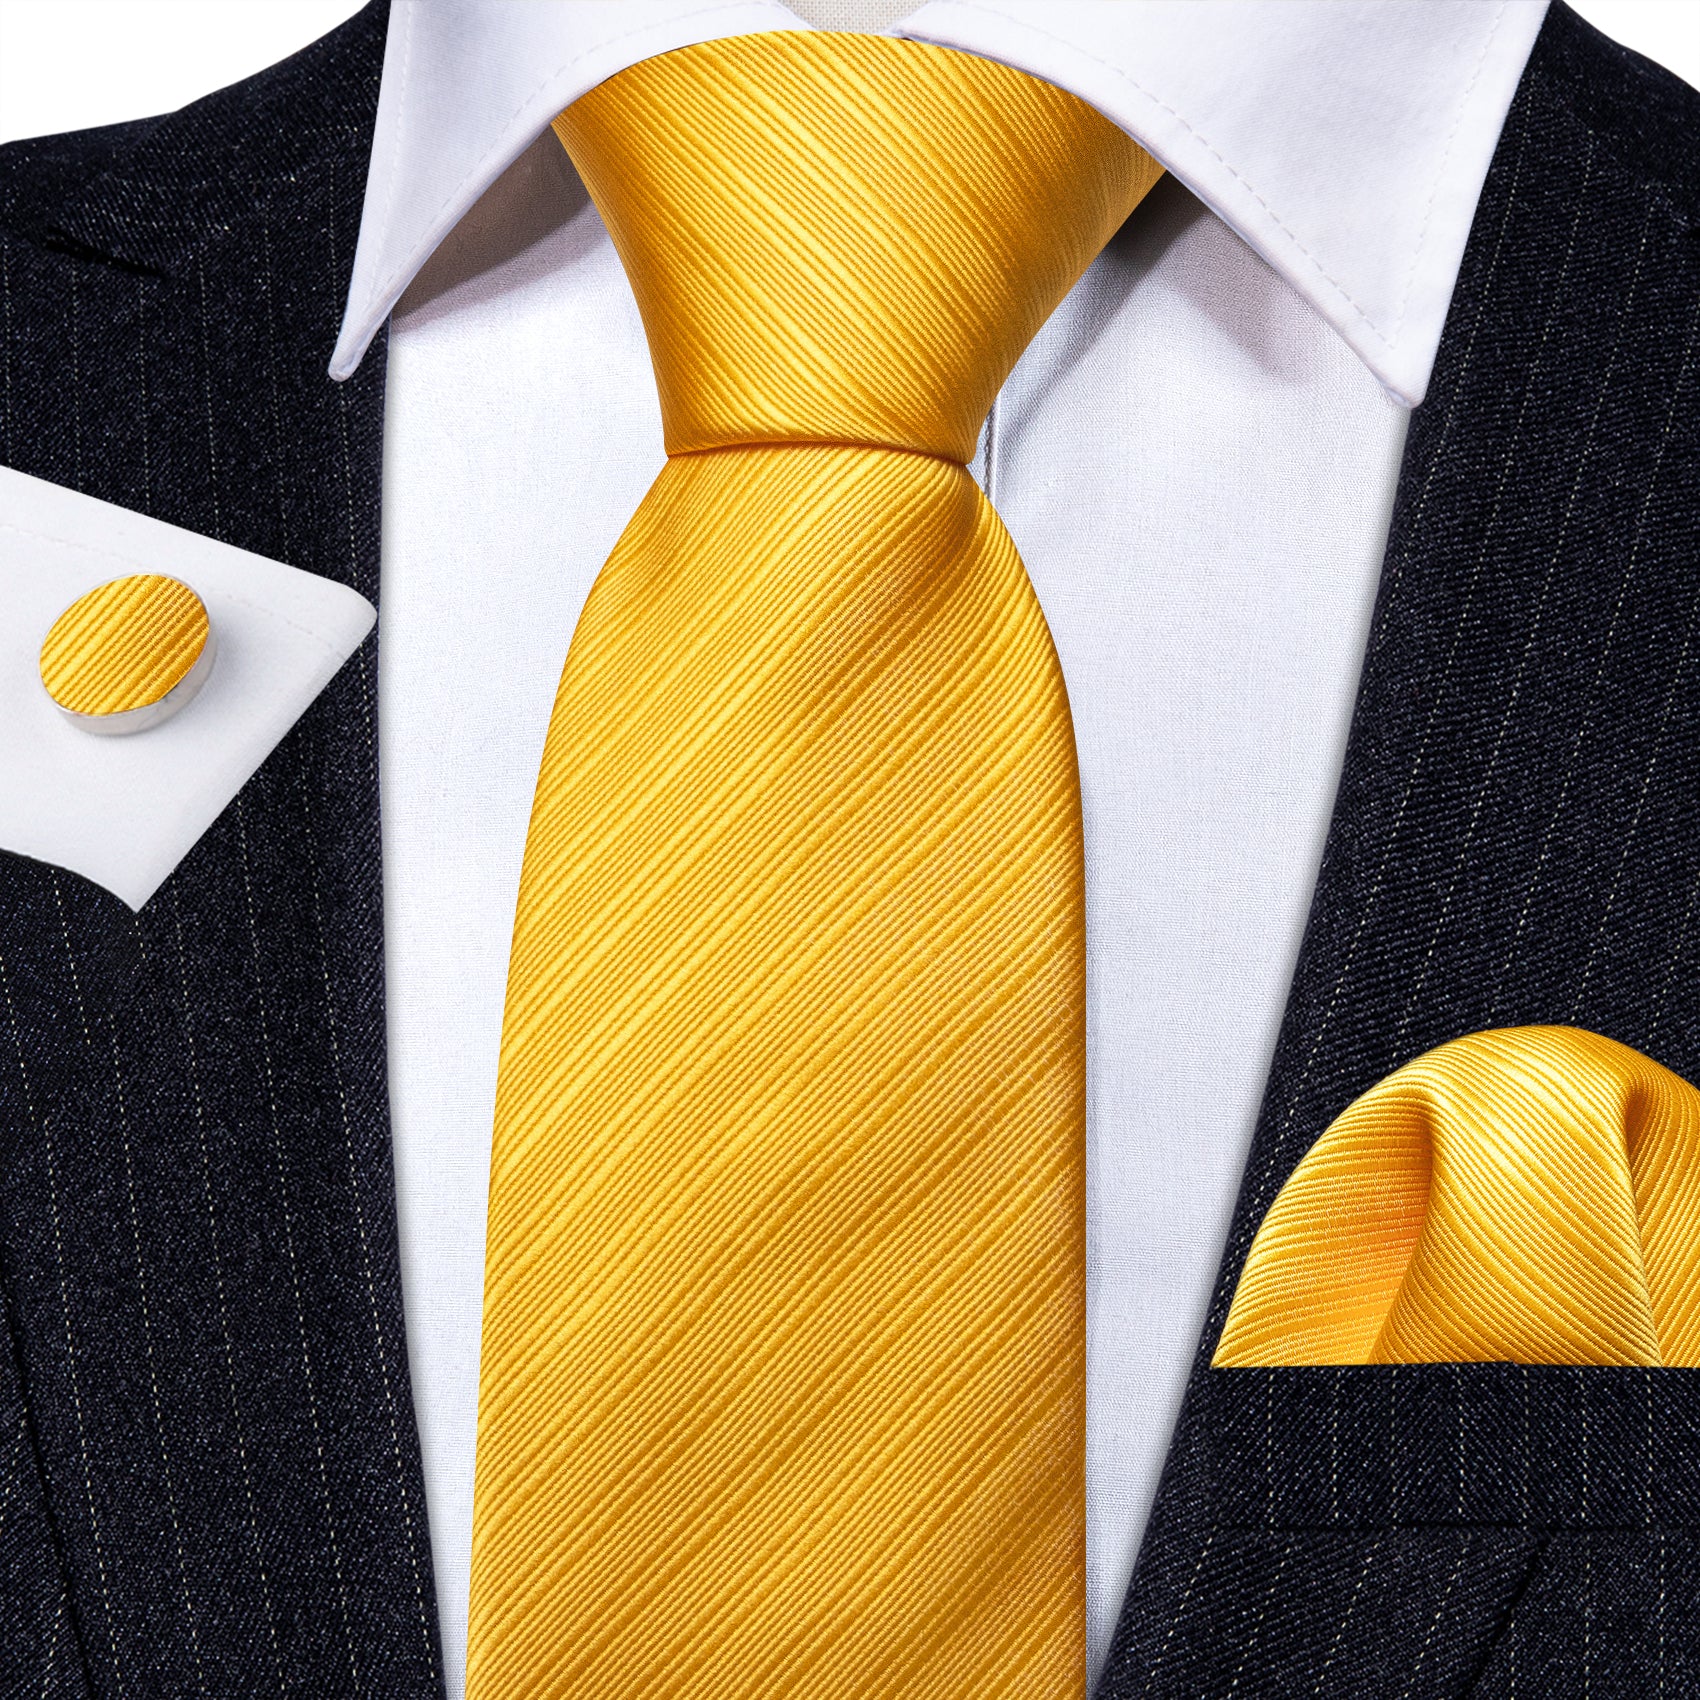 Barry.Wang Yellow Tie Striped Silk Tie Hanky Cufflinks Set Hot Selling